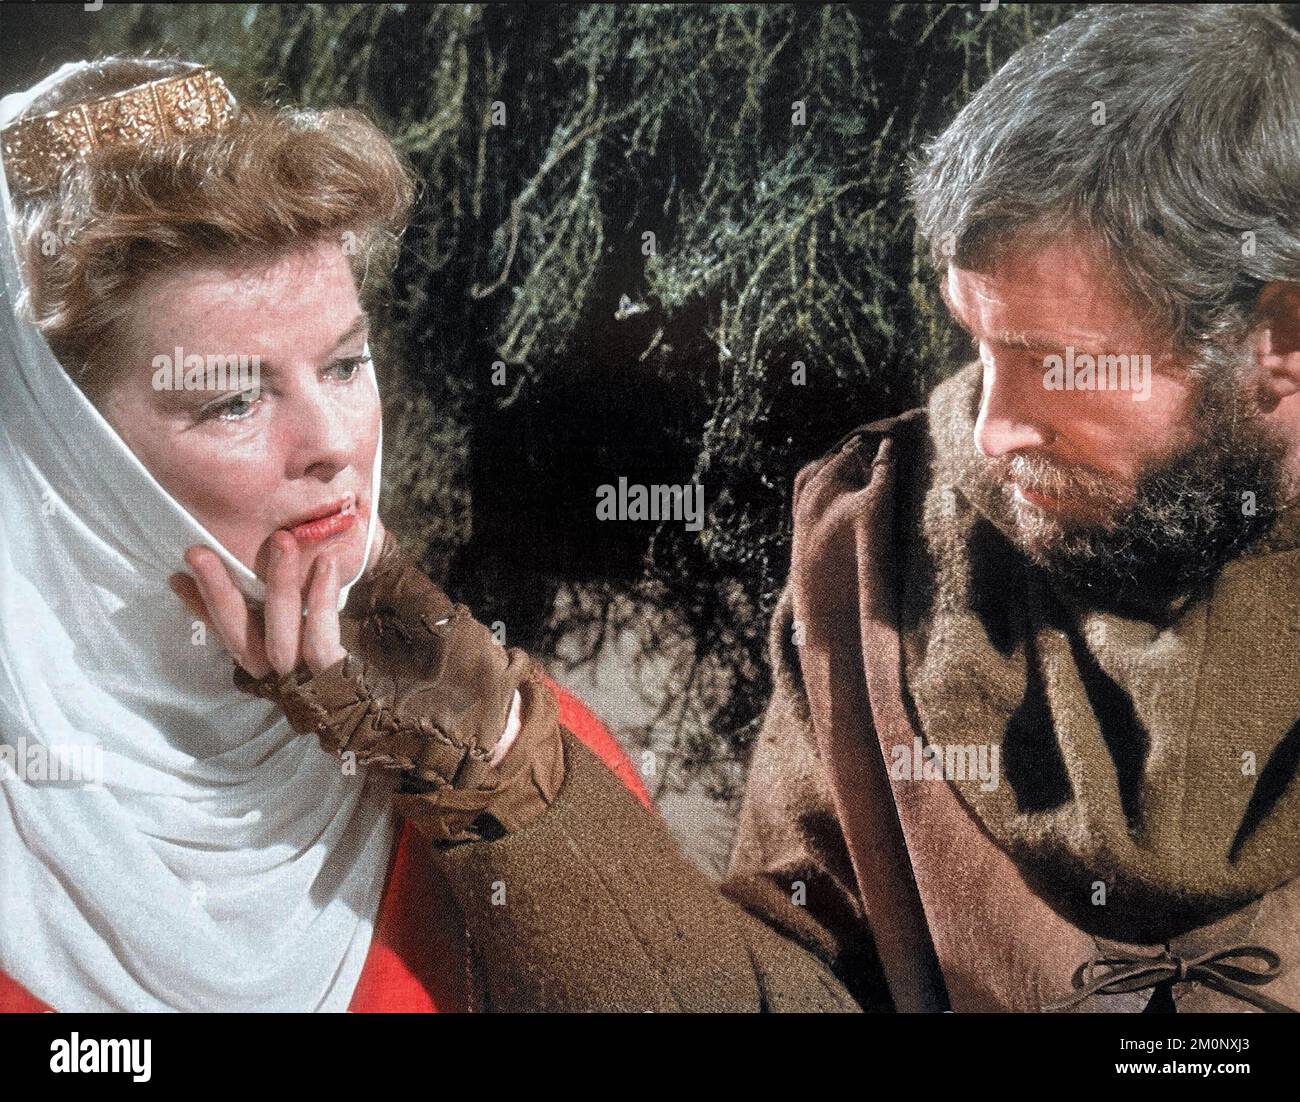 LE LION EN HIVER 1968 L'AMBASSADE D'AVCO Images film avec Peter O'Toole comme Henry II et Katharine Hepburn comme son épouse séparée Eleanor d'Acquitaine Banque D'Images